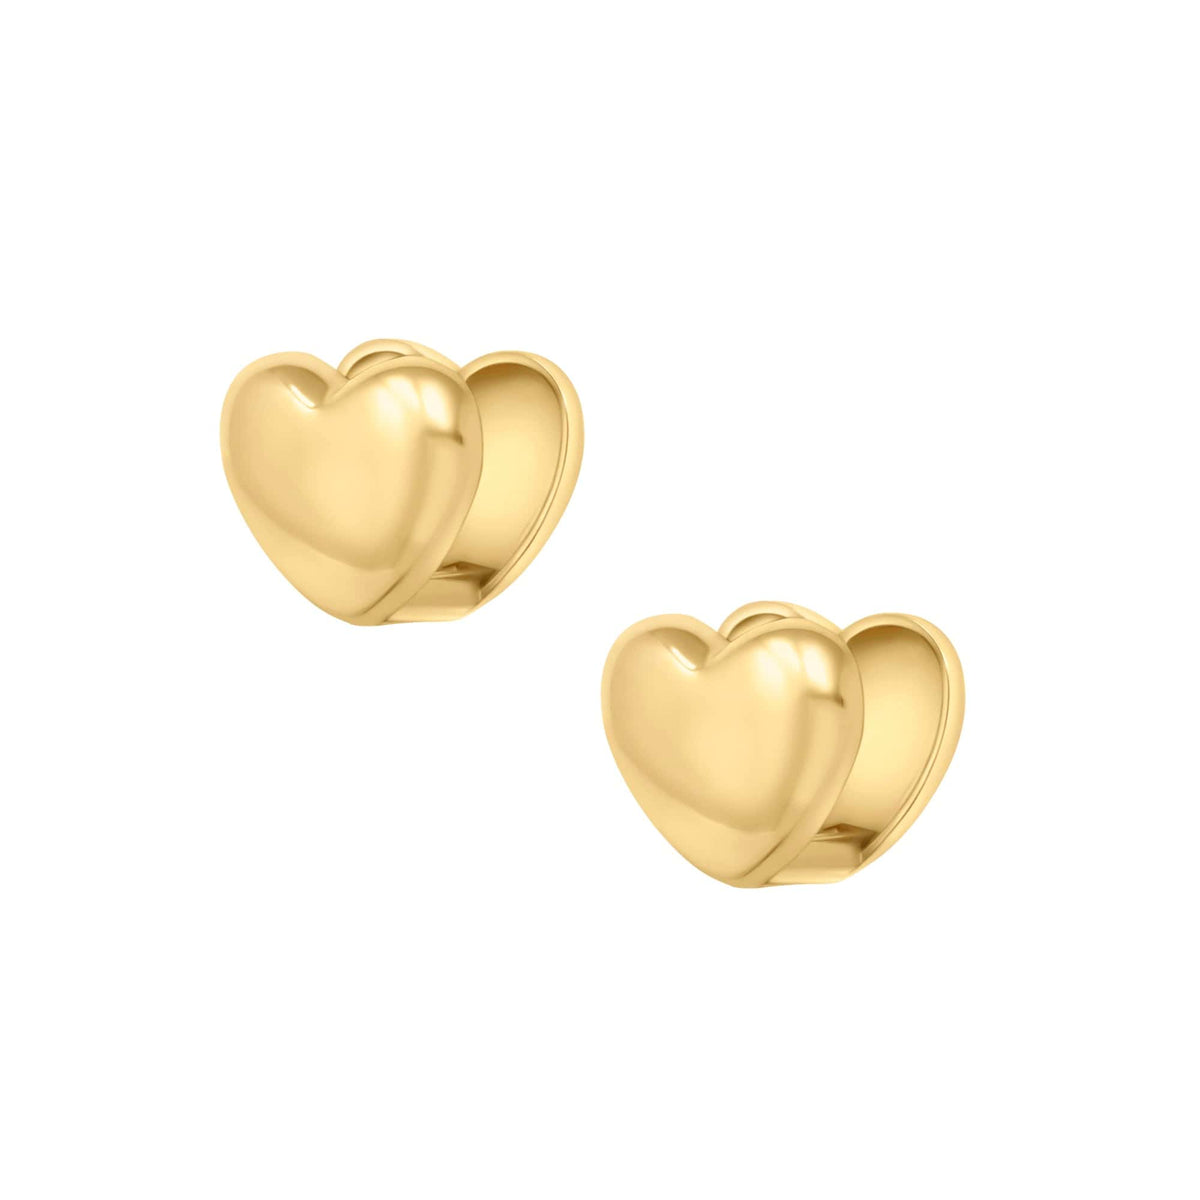 BohoMoon Stainless Steel Lovebug Stud Earrings Gold